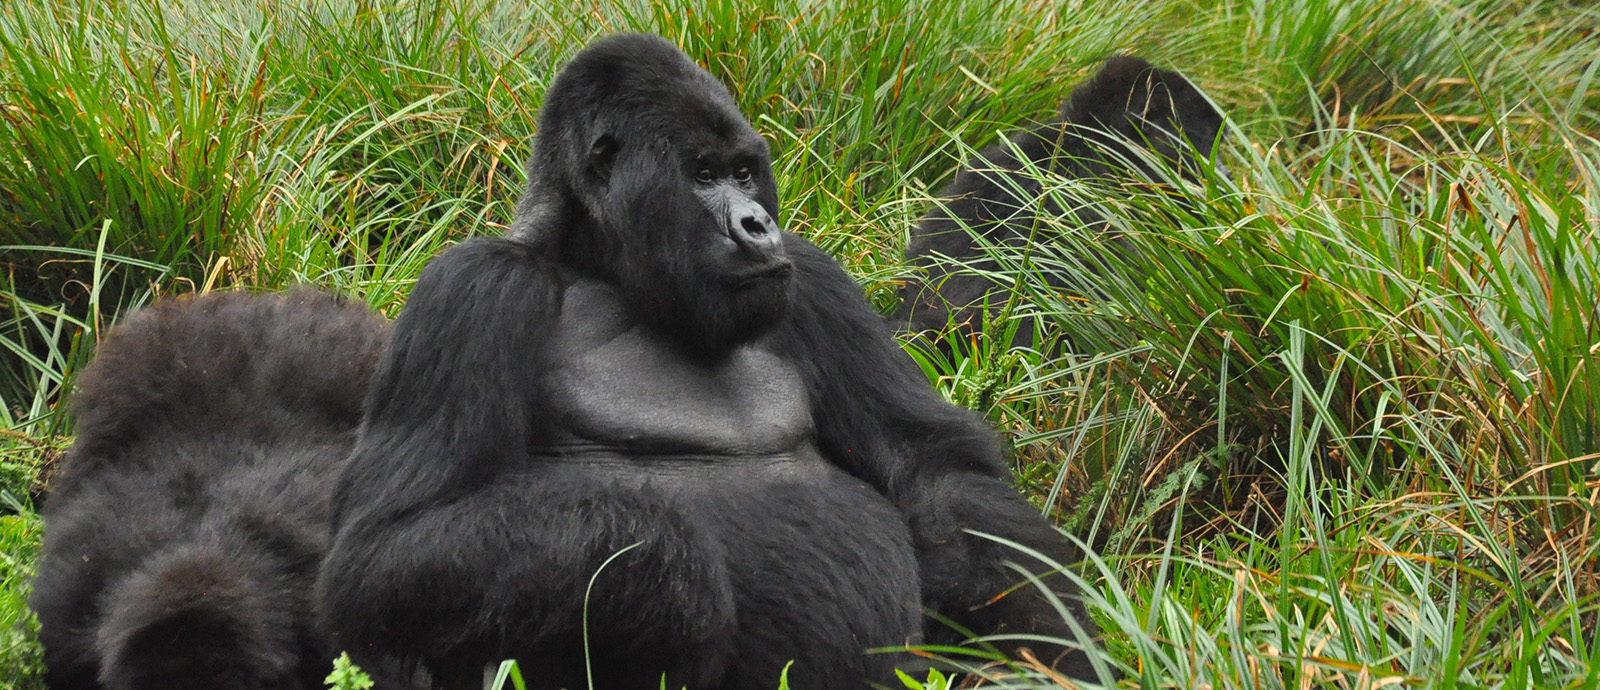 Uganda Safari and Gorilla Tracking